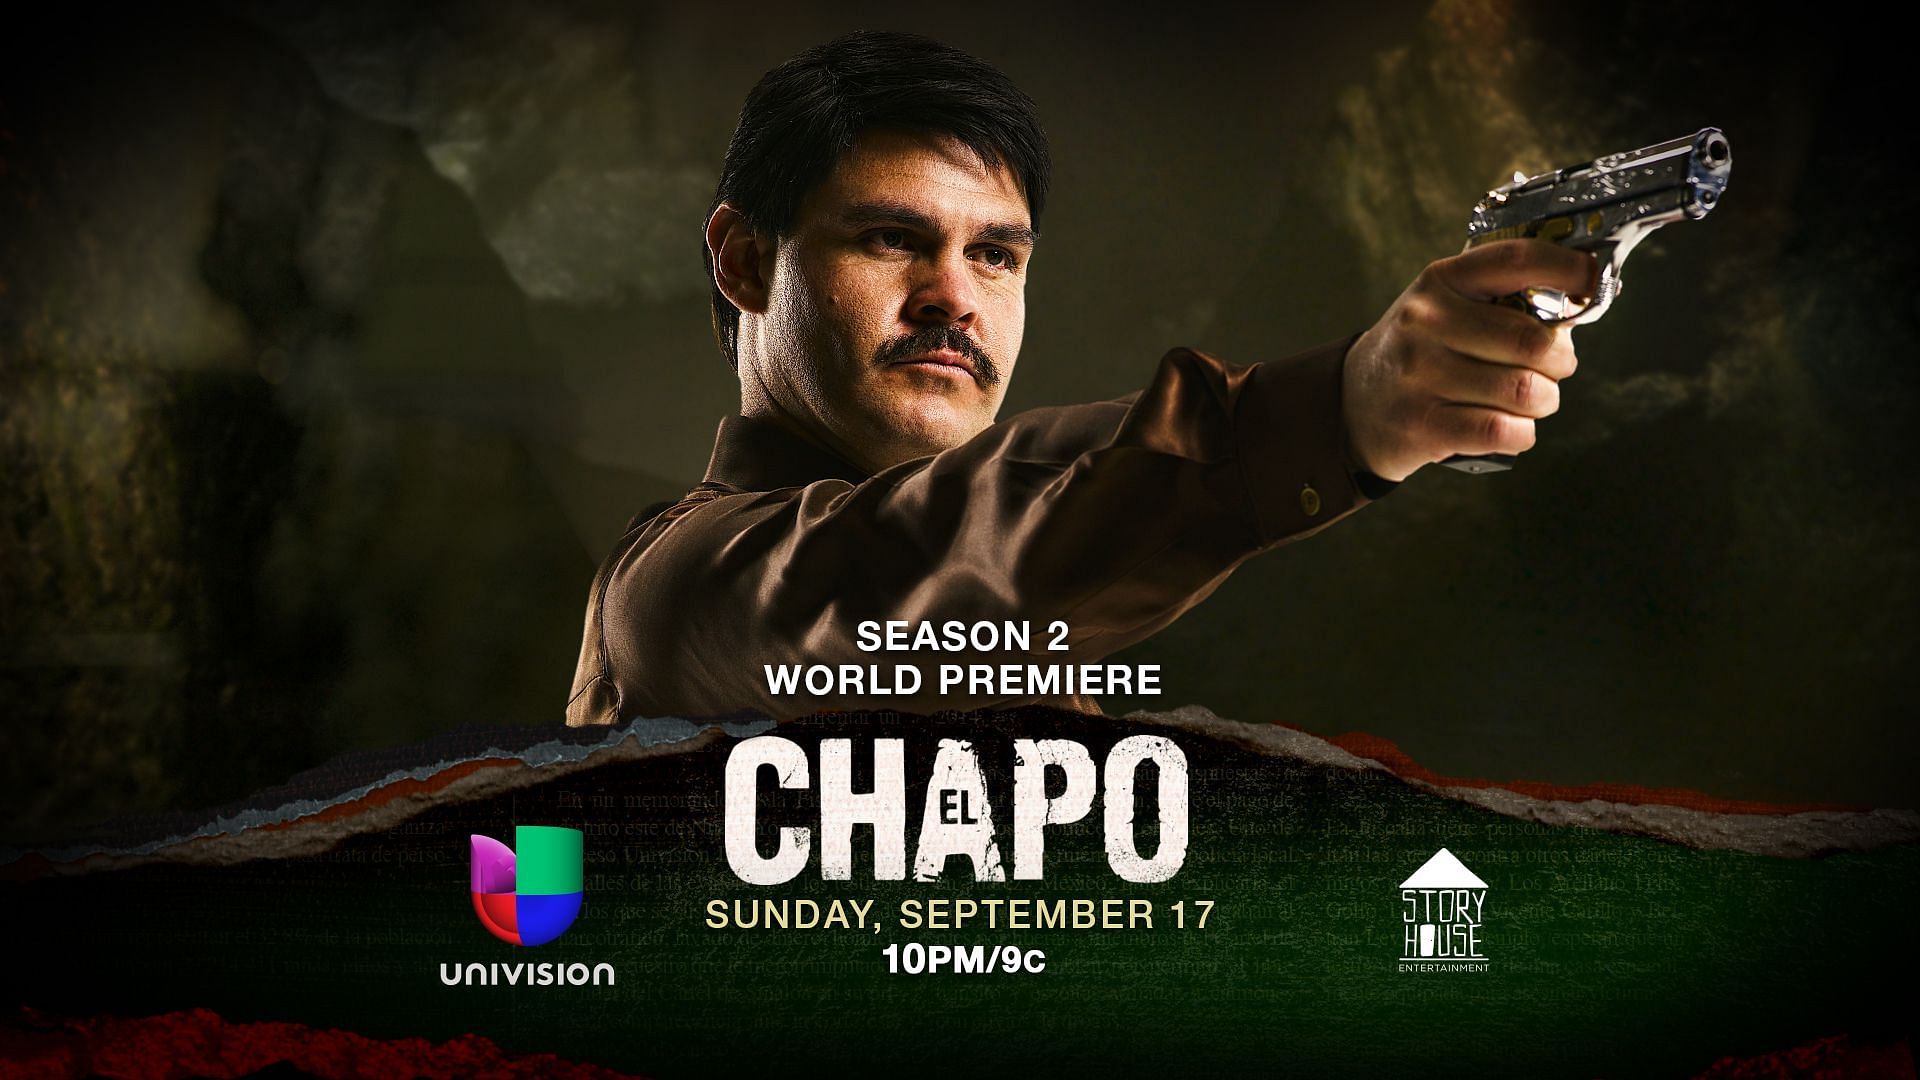 El Chapo (Image via Univision)